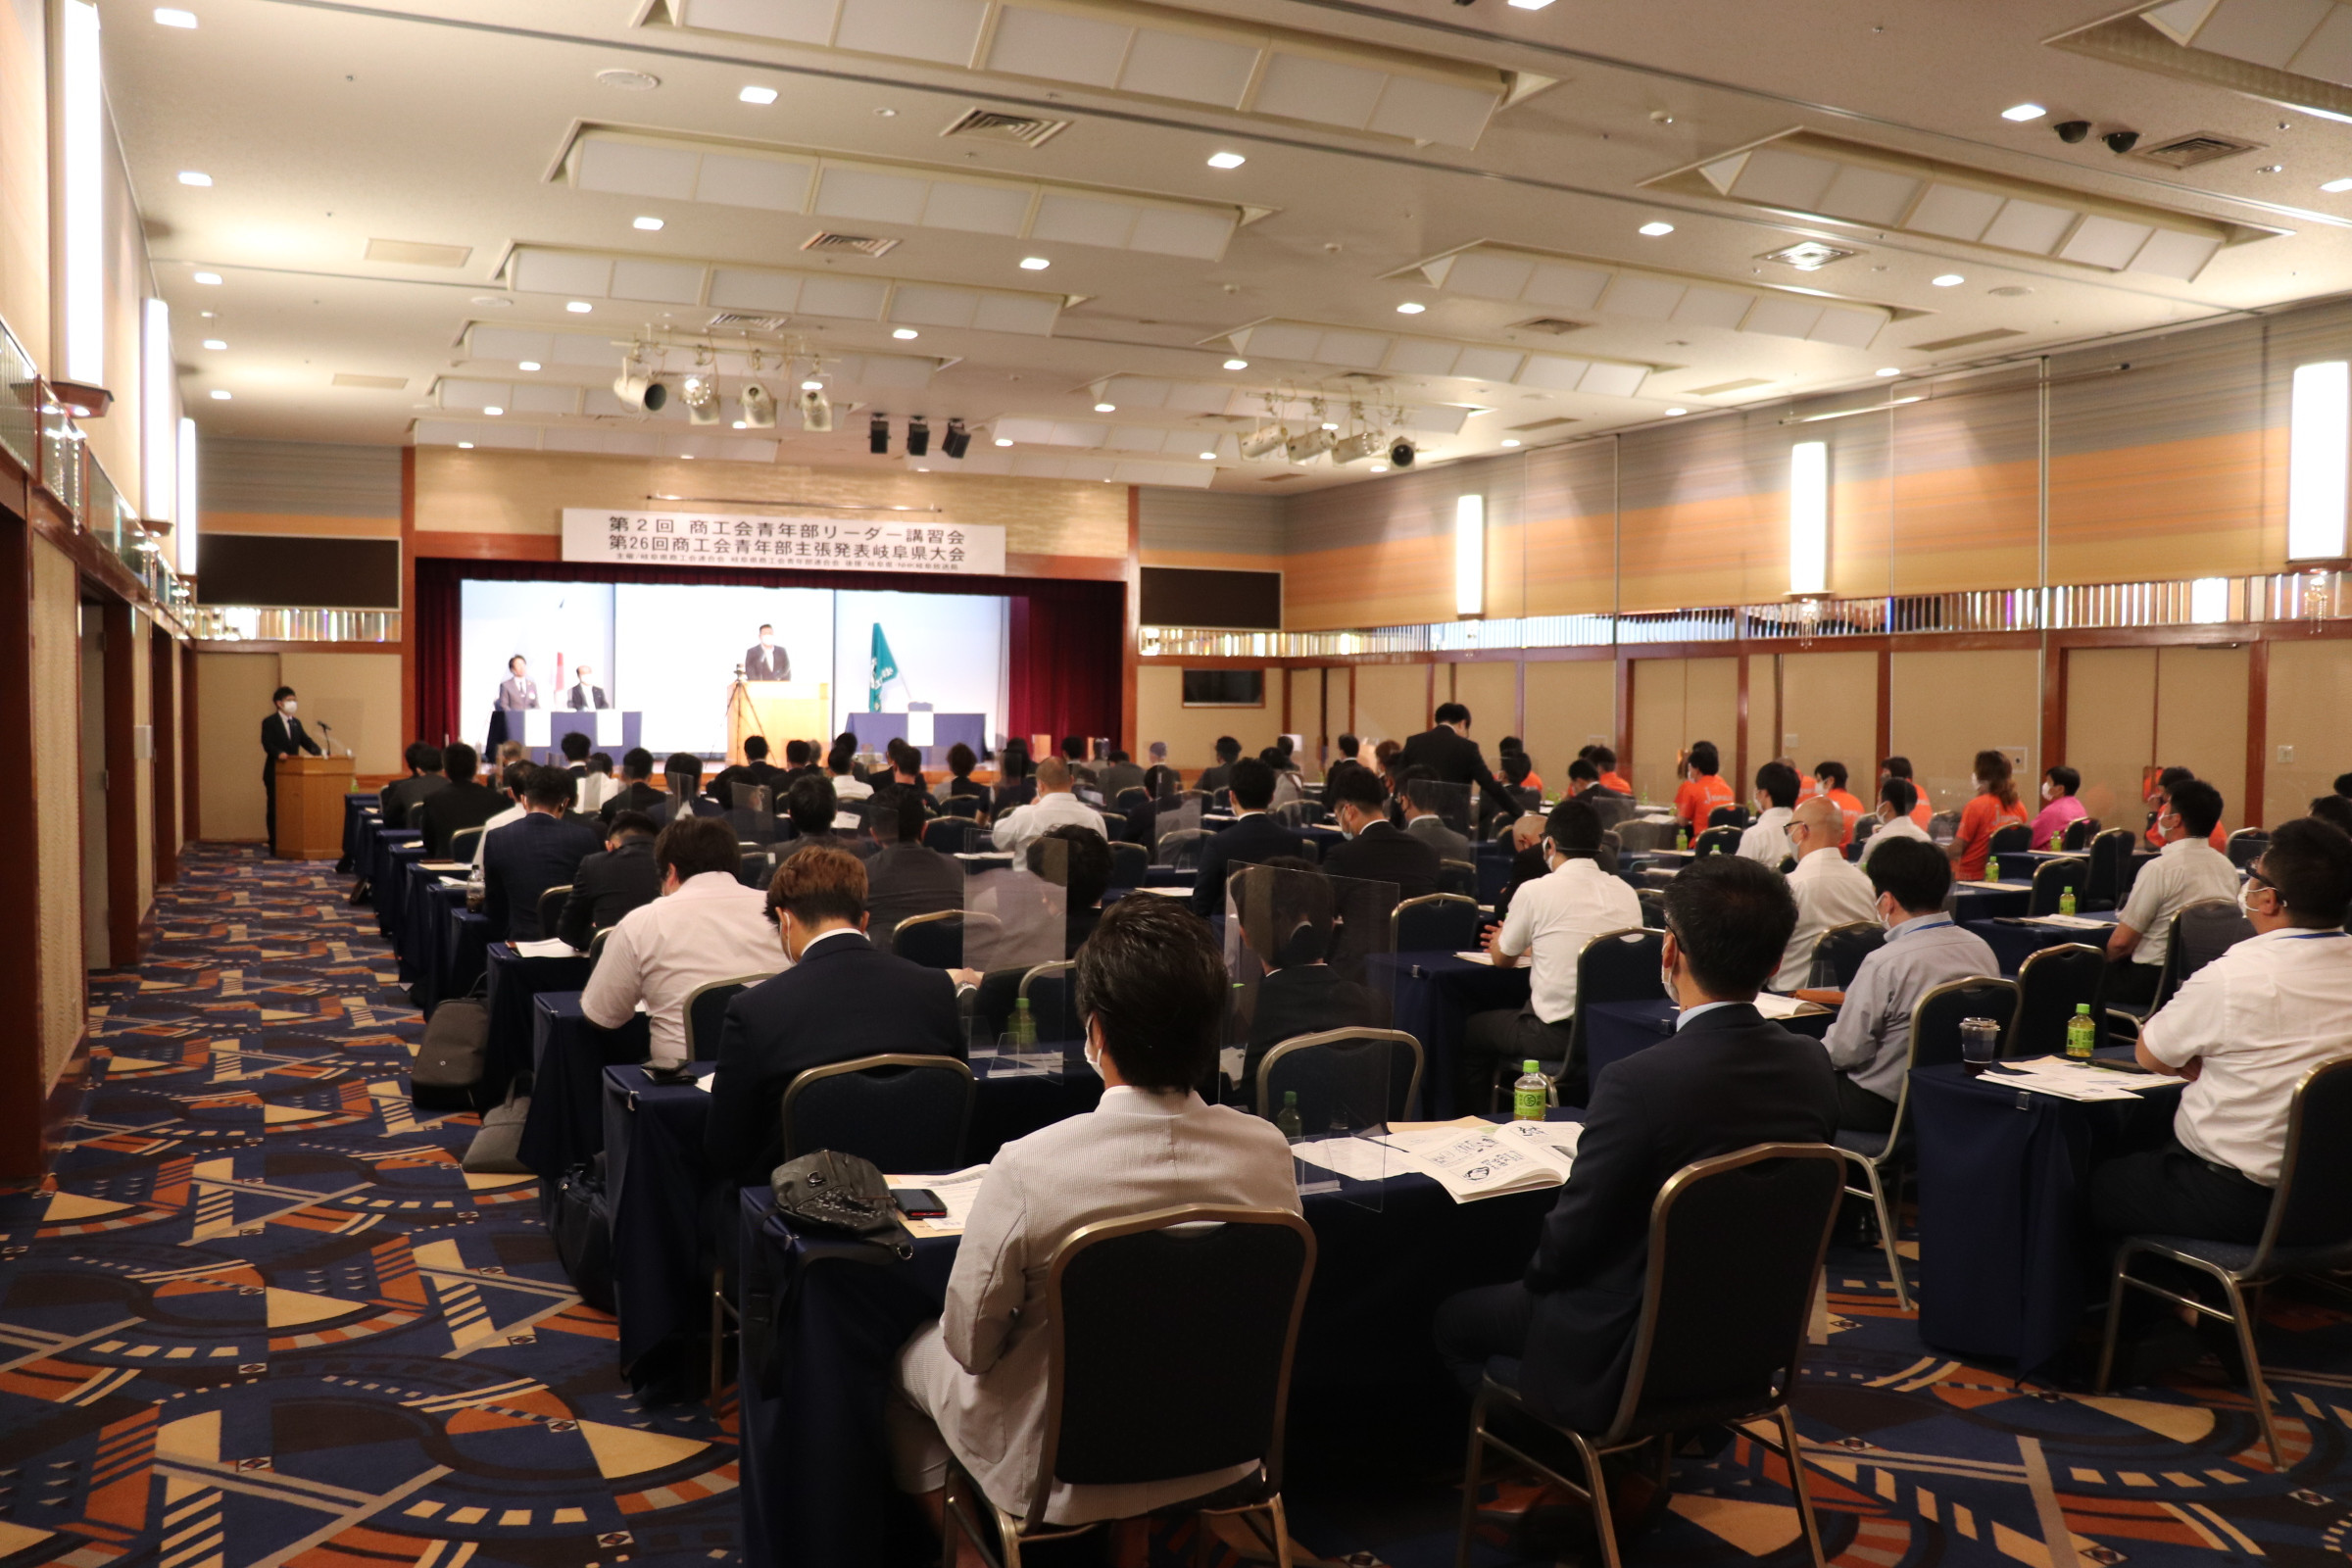 第26回商工会青年部主張発表岐阜県大会及び第2回商工会青年部リーダー講習会を開催しました